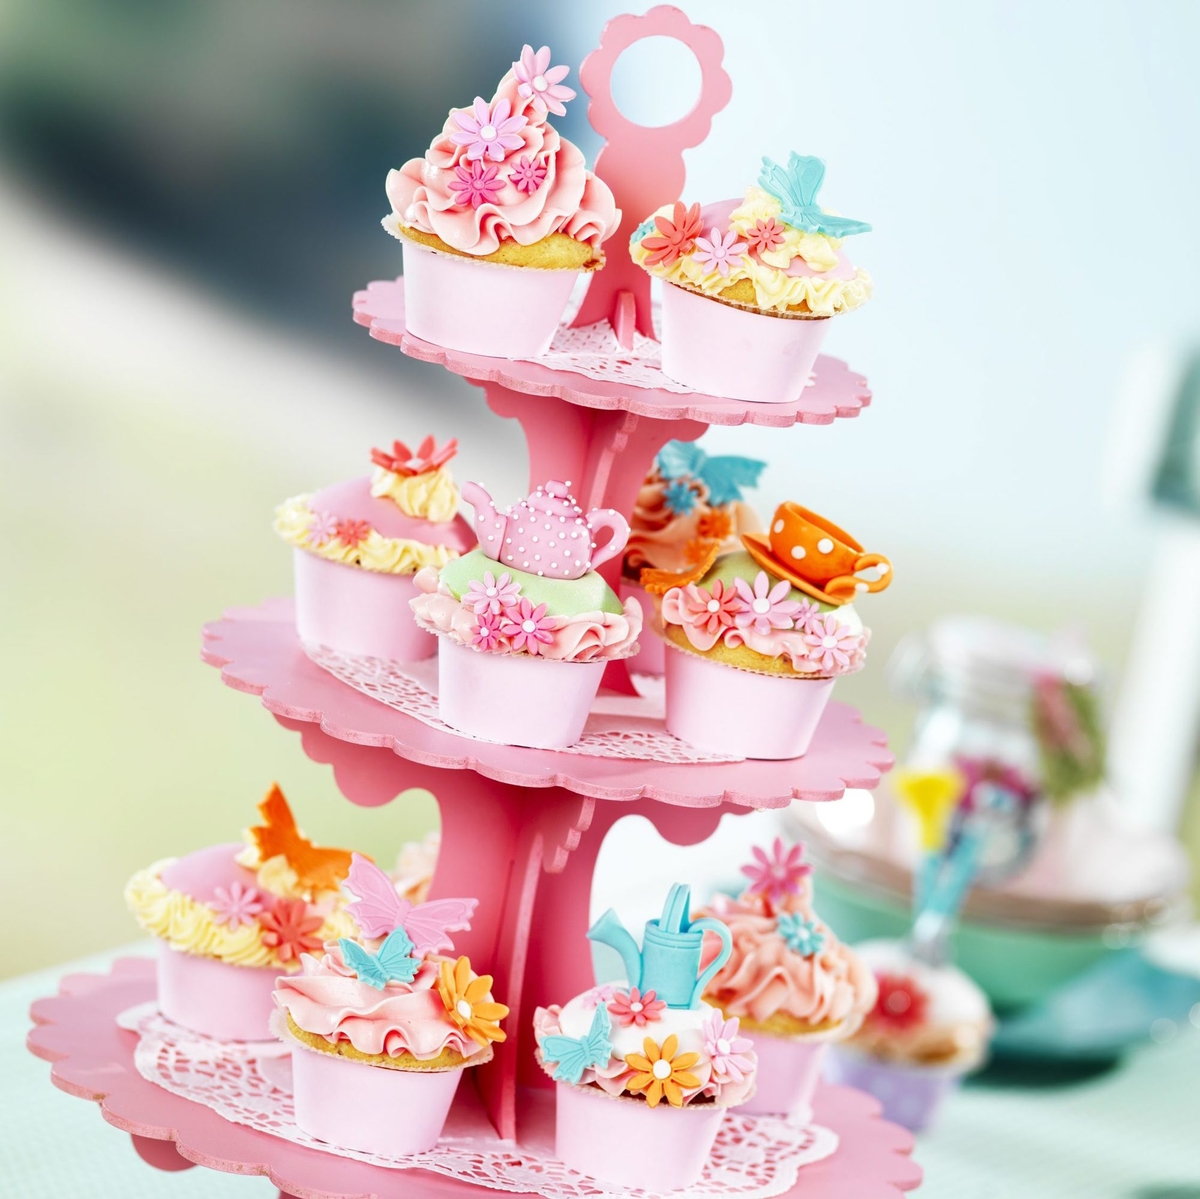 Gorgeous cupcakes